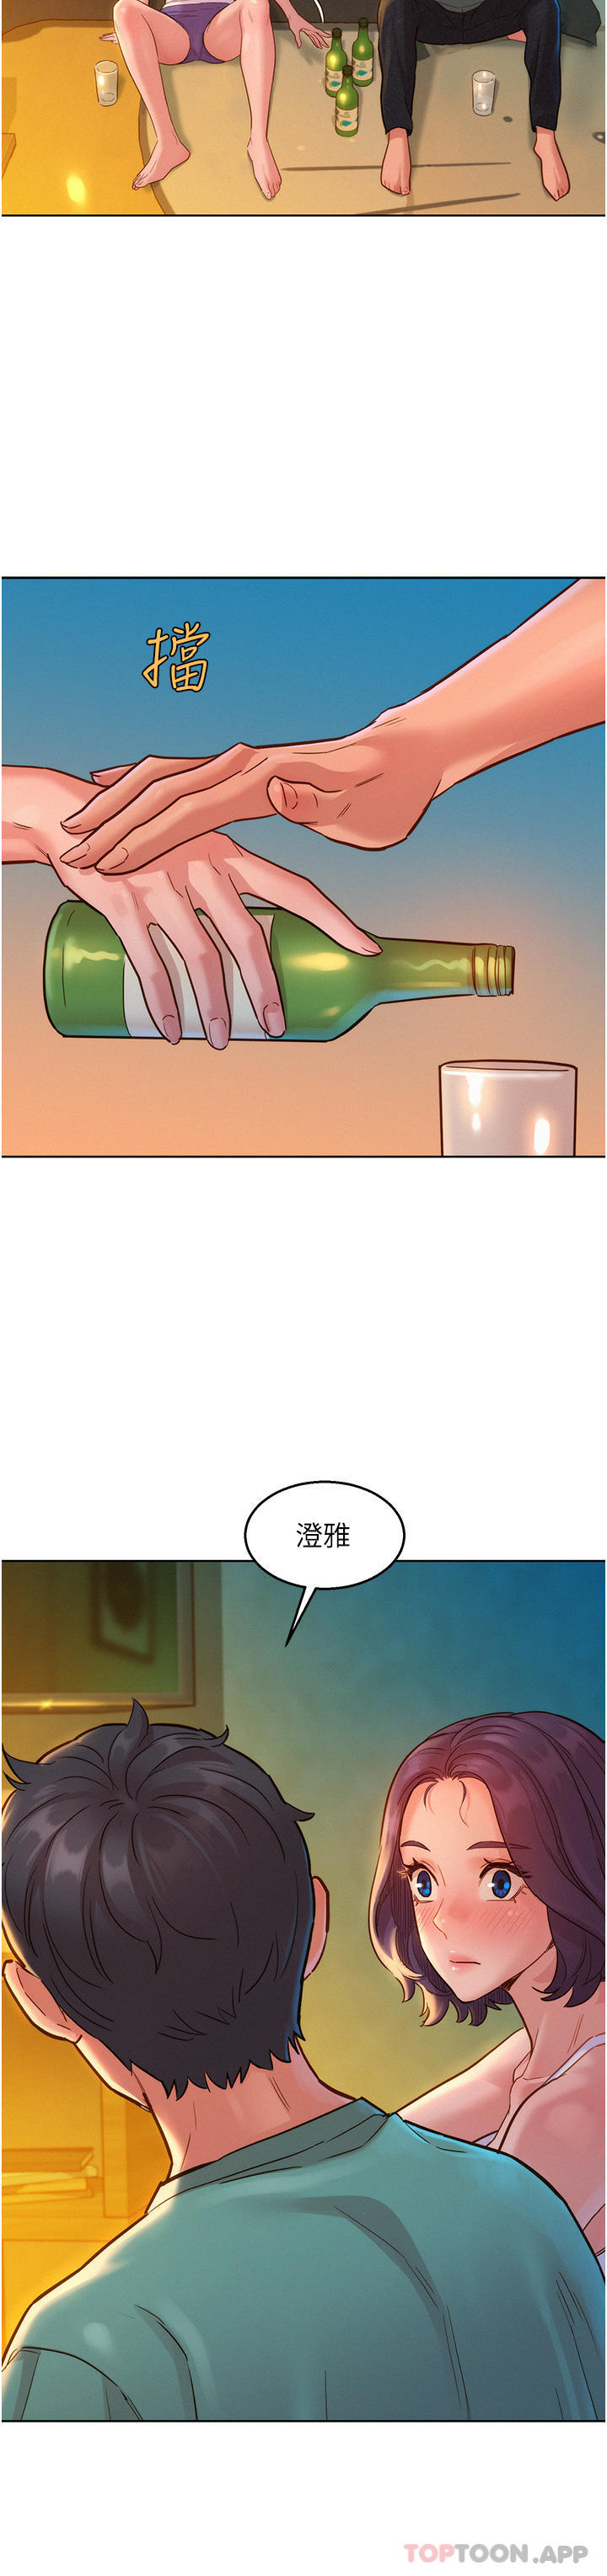 韩国漫画友情万睡韩漫_友情万睡-第27话-喜欢刺激X头的感觉在线免费阅读-韩国漫画-第14张图片